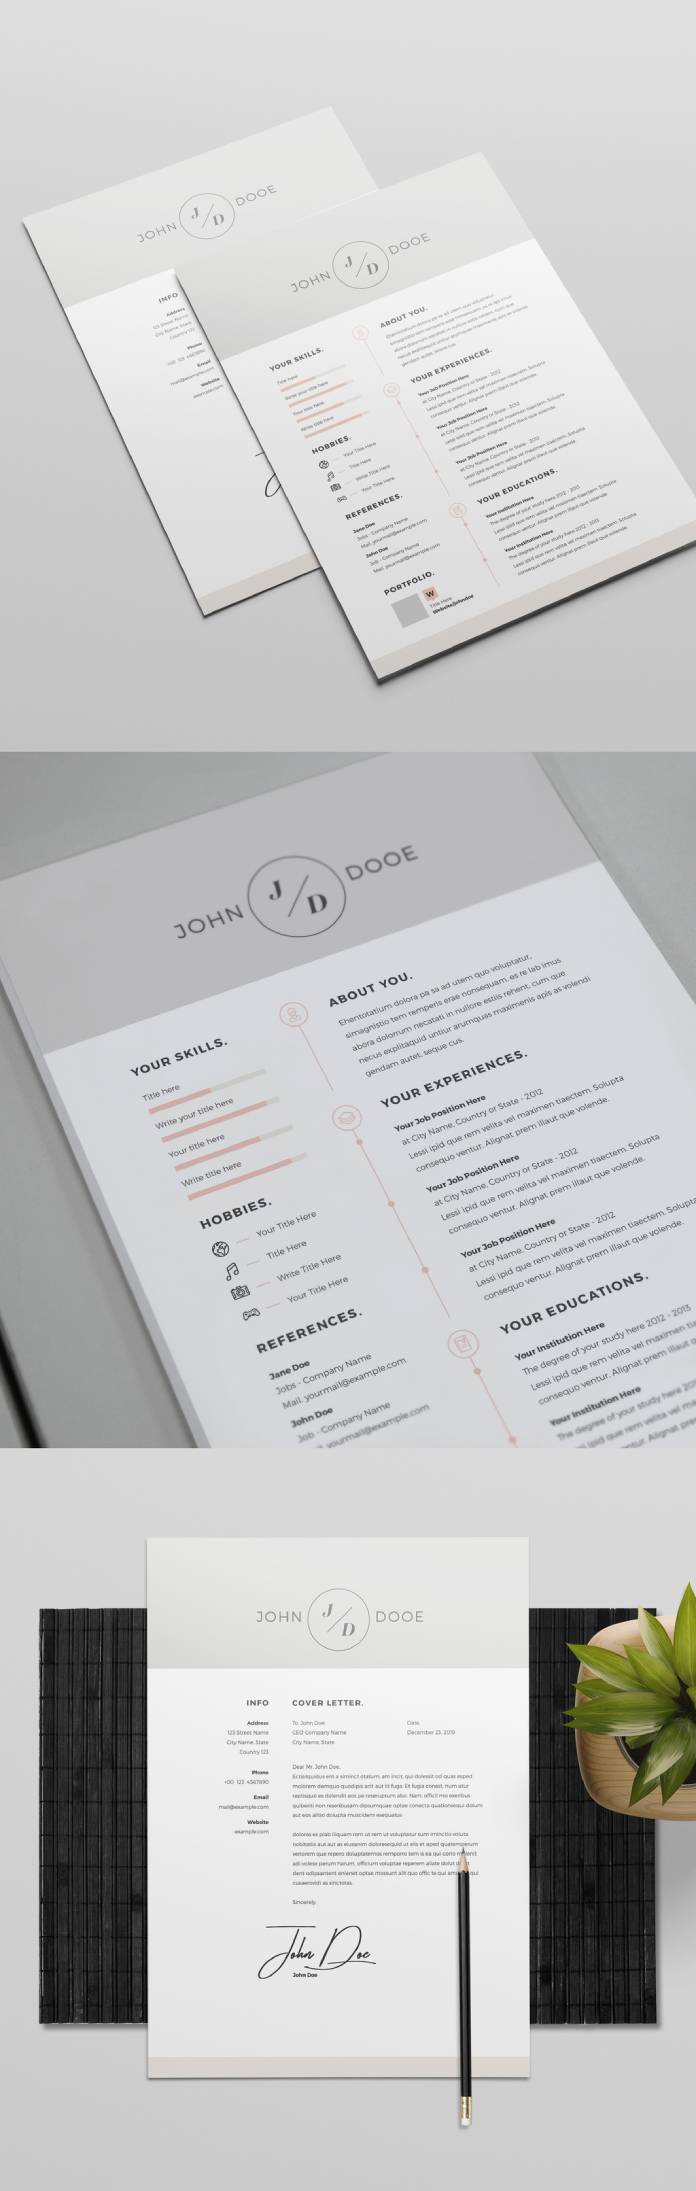 Adobe InDesign CV-sjabloon met grijze kop- en voettekst